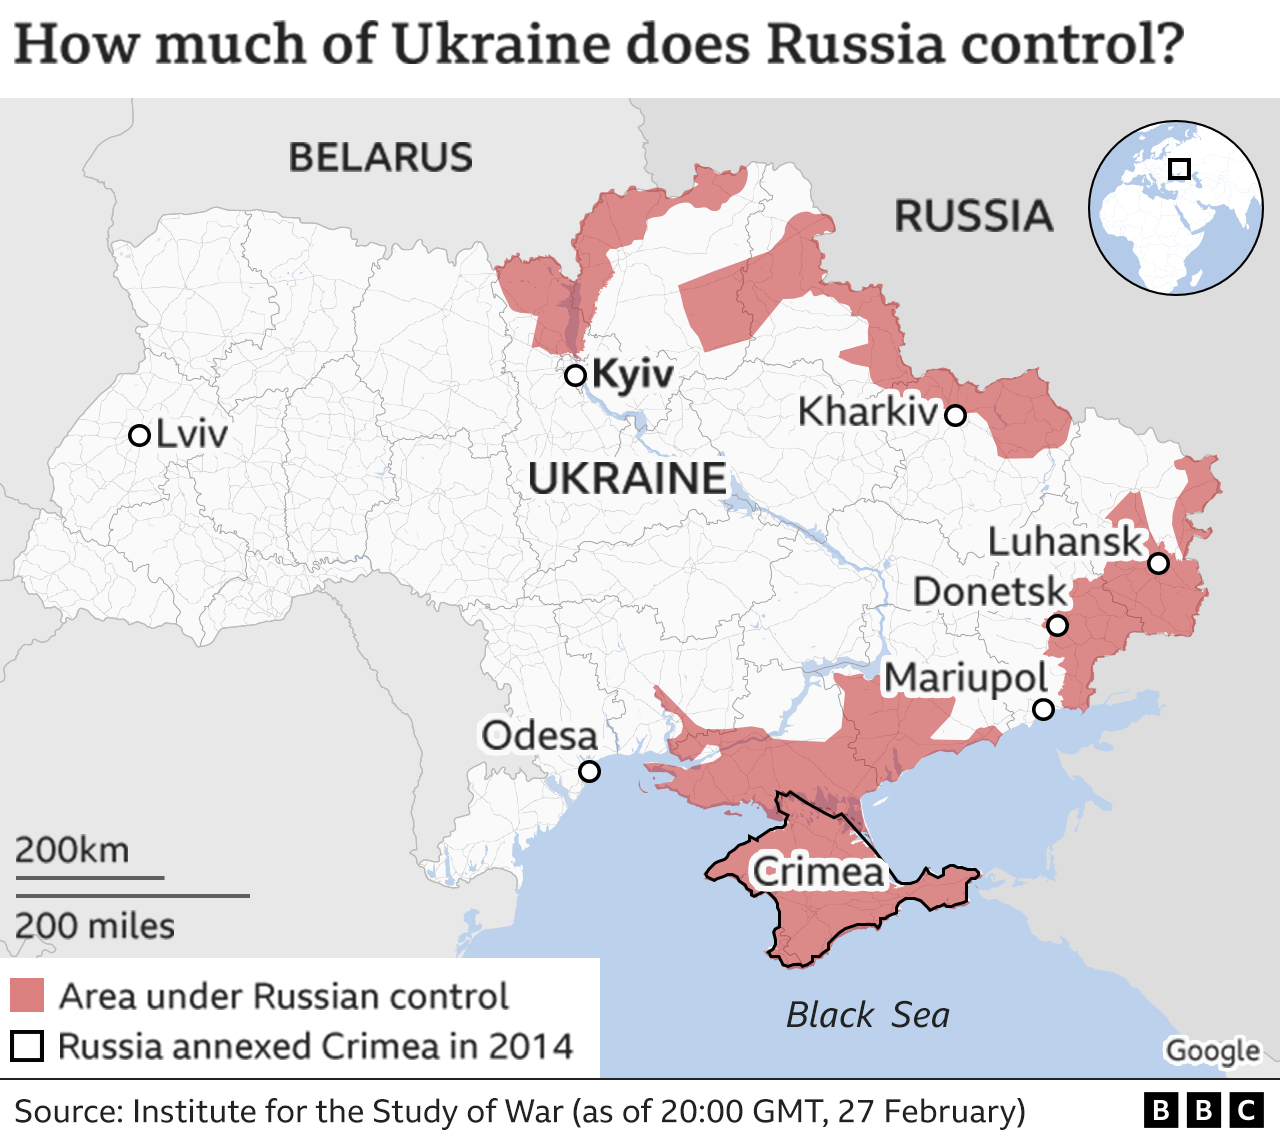 Đe dọa miền nam Ukraine từ Nga là một vấn đề đang được quan tâm hiện nay. Tuy nhiên, với các chính sách mới nhất của hai quốc gia, hy vọng sự khác biệt sẽ được giải quyết. Xem để hiểu rõ hơn về tình hình hiện tại và triển vọng tương lai.